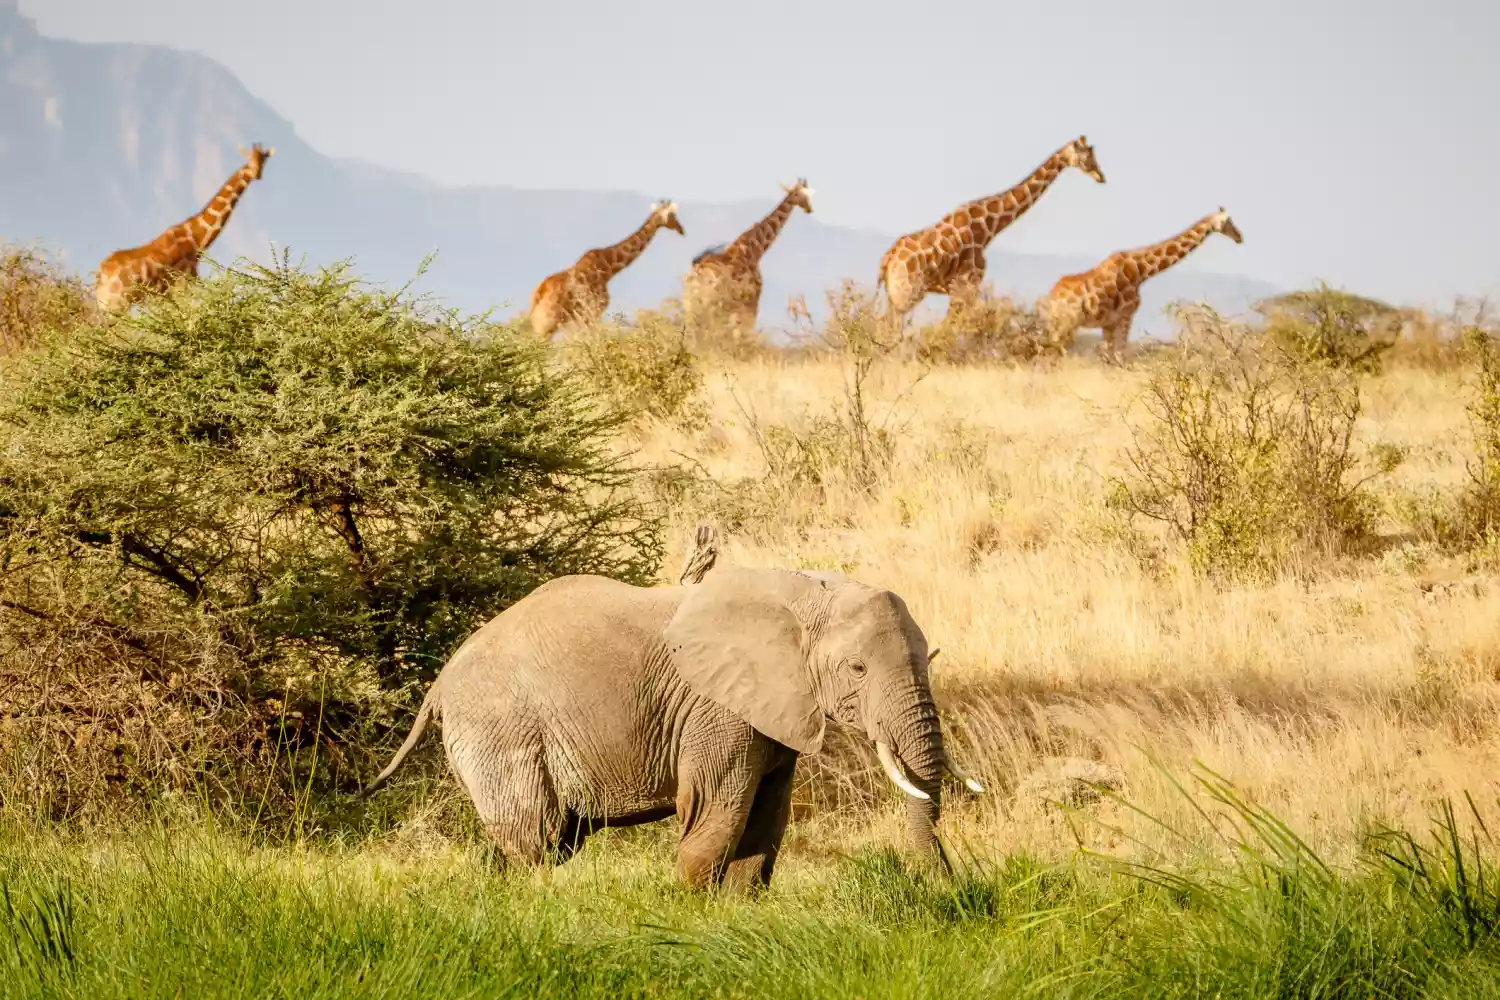 An elephant and giraffes on the savana